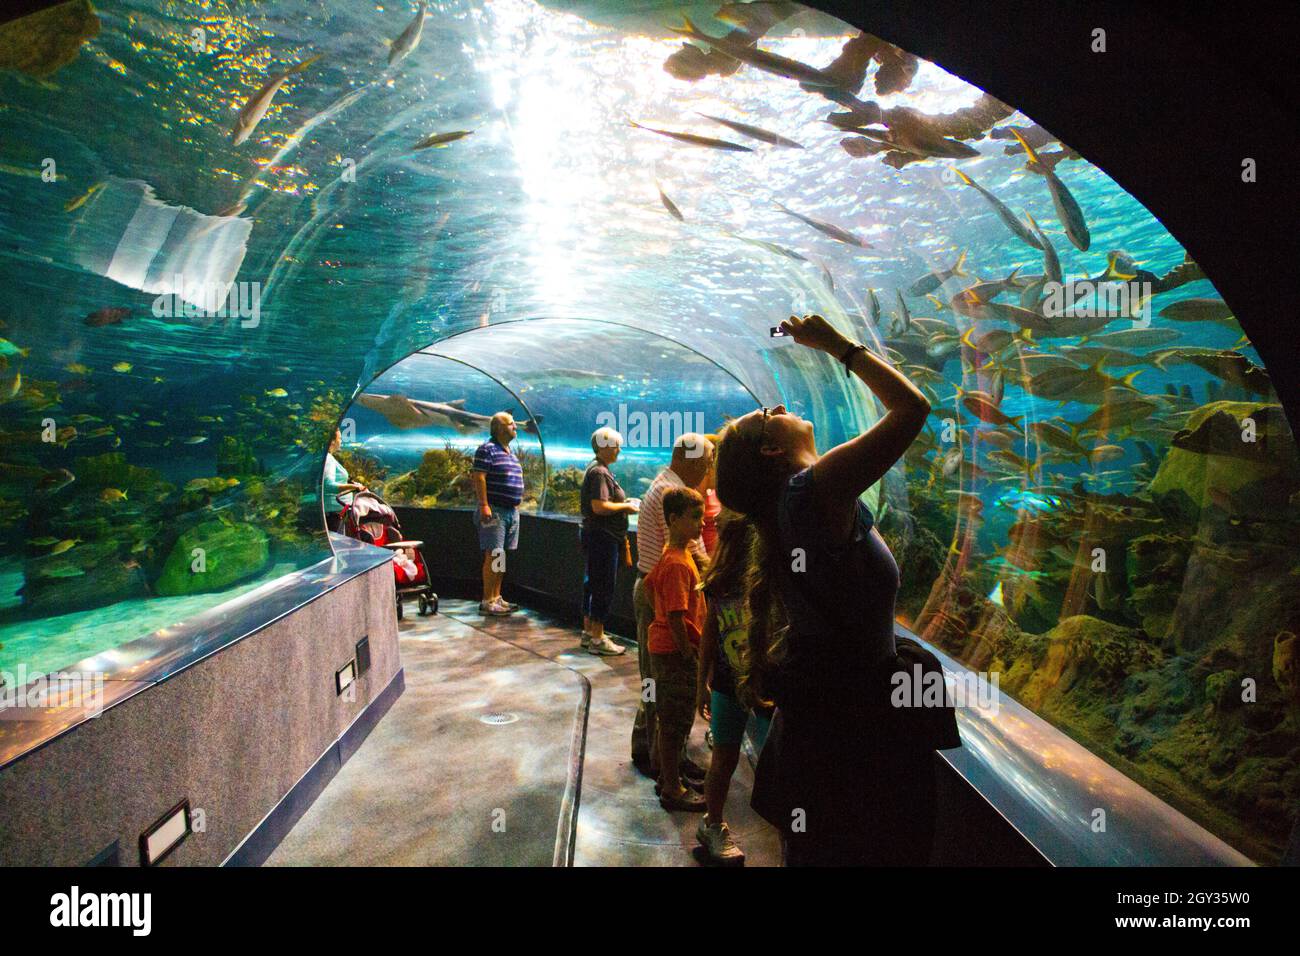 Besucher fotografieren einen Glastunnel in einem Aquarium Stockfoto